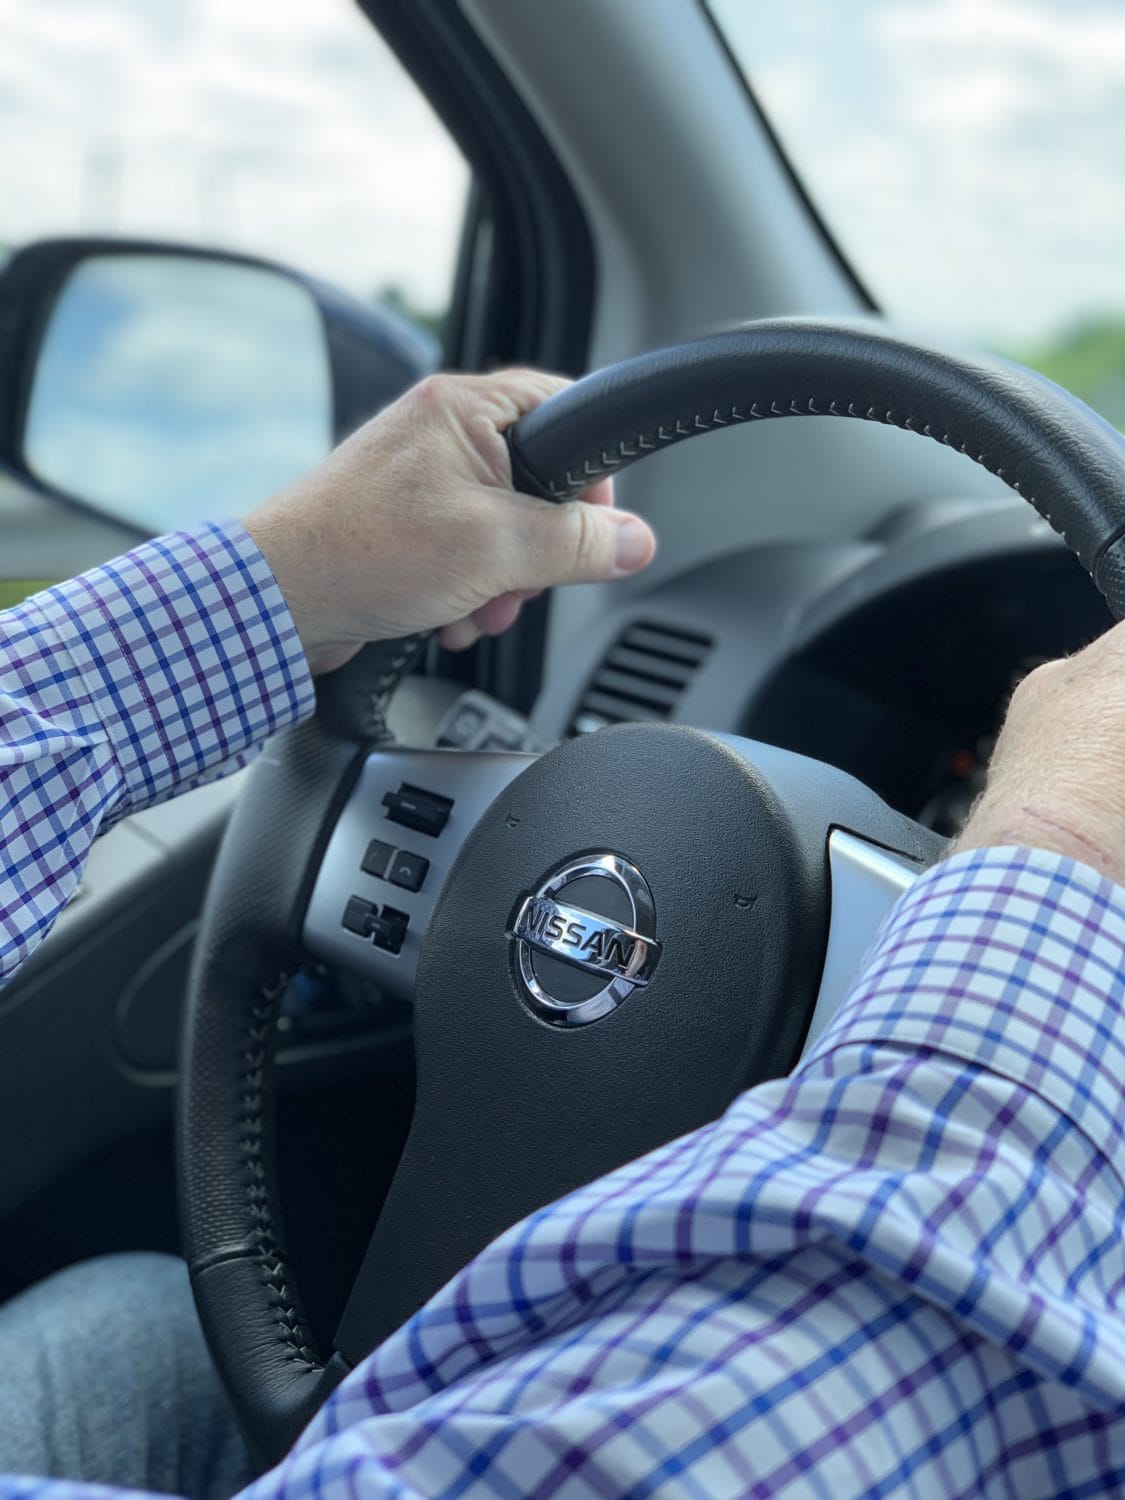 2019 Nissan Frontier steering wheel